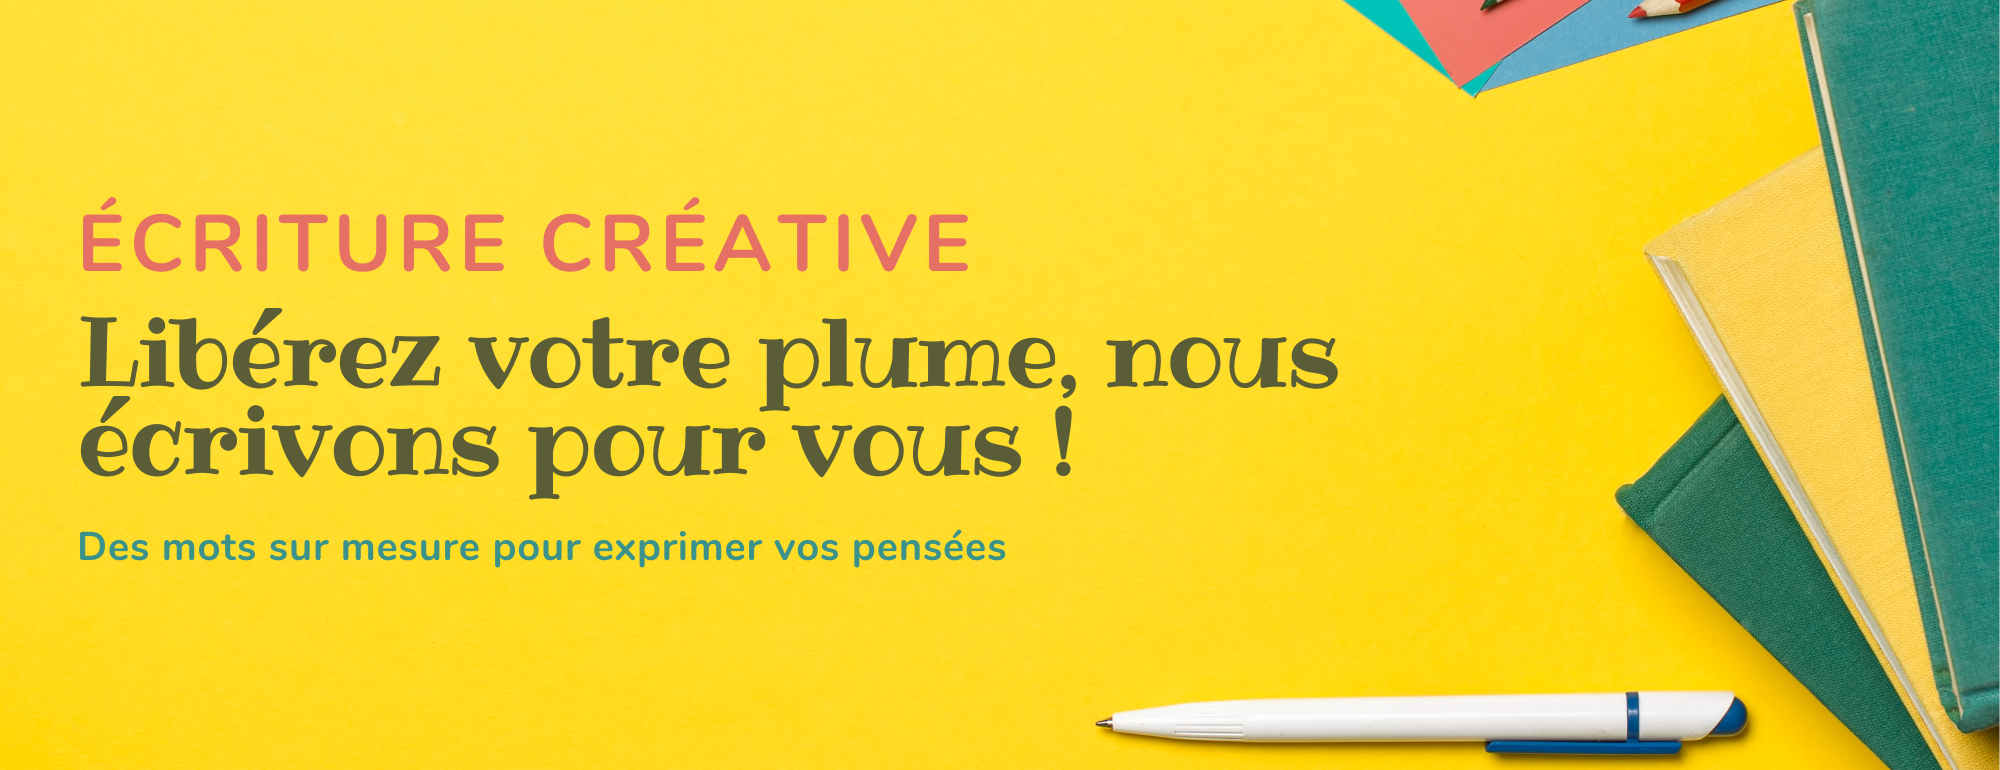 Écriture créative - Libérez votre plume, nous écrivons pour vous !